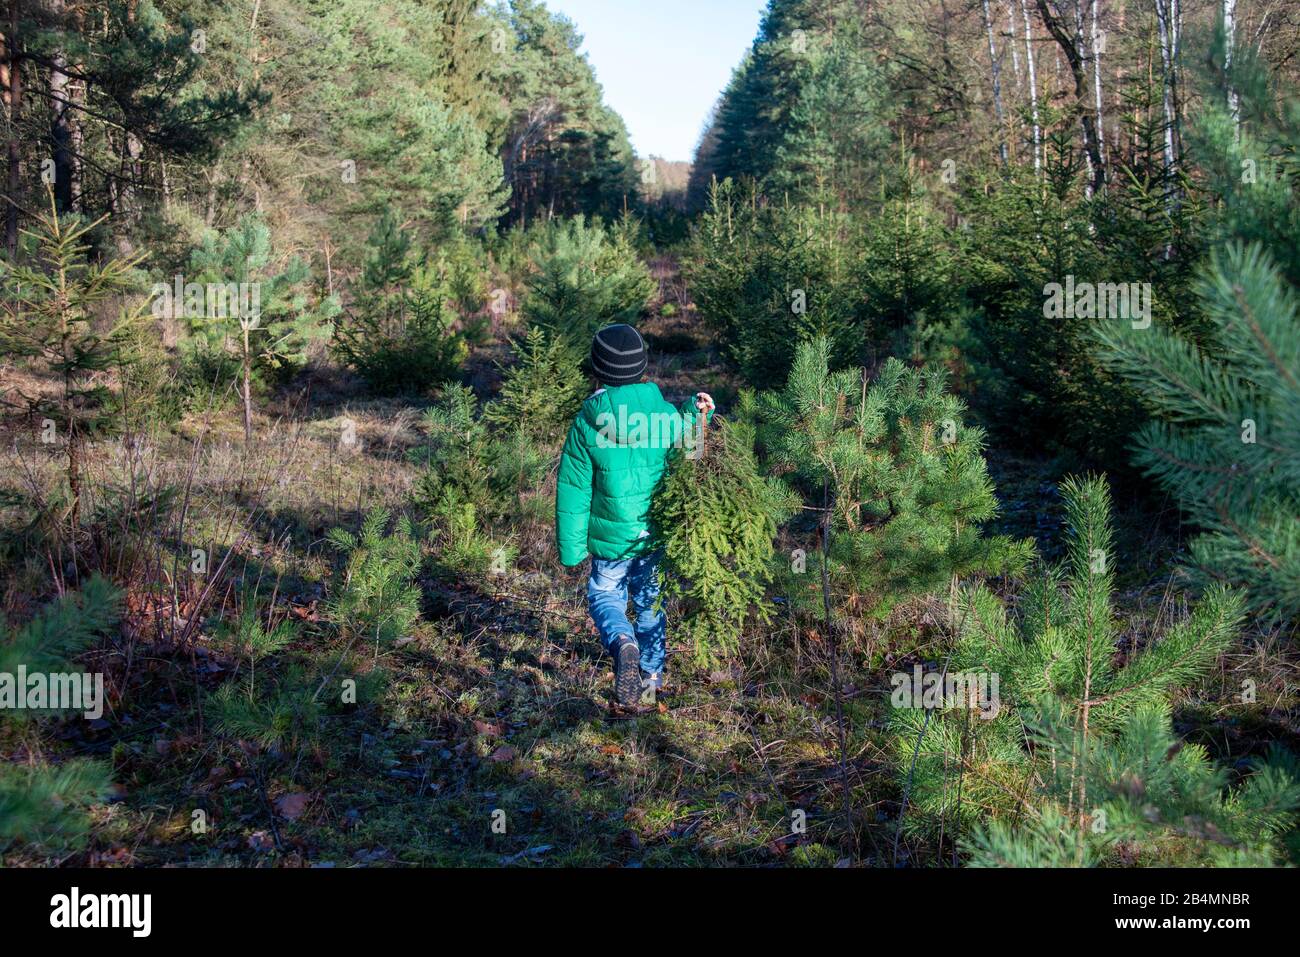 Junge, 8-10Jahre, trägt eine abgesägte Kiefer aus dem Wald,traditionelles Weihnachtsbaumschlagen. Stock Photo